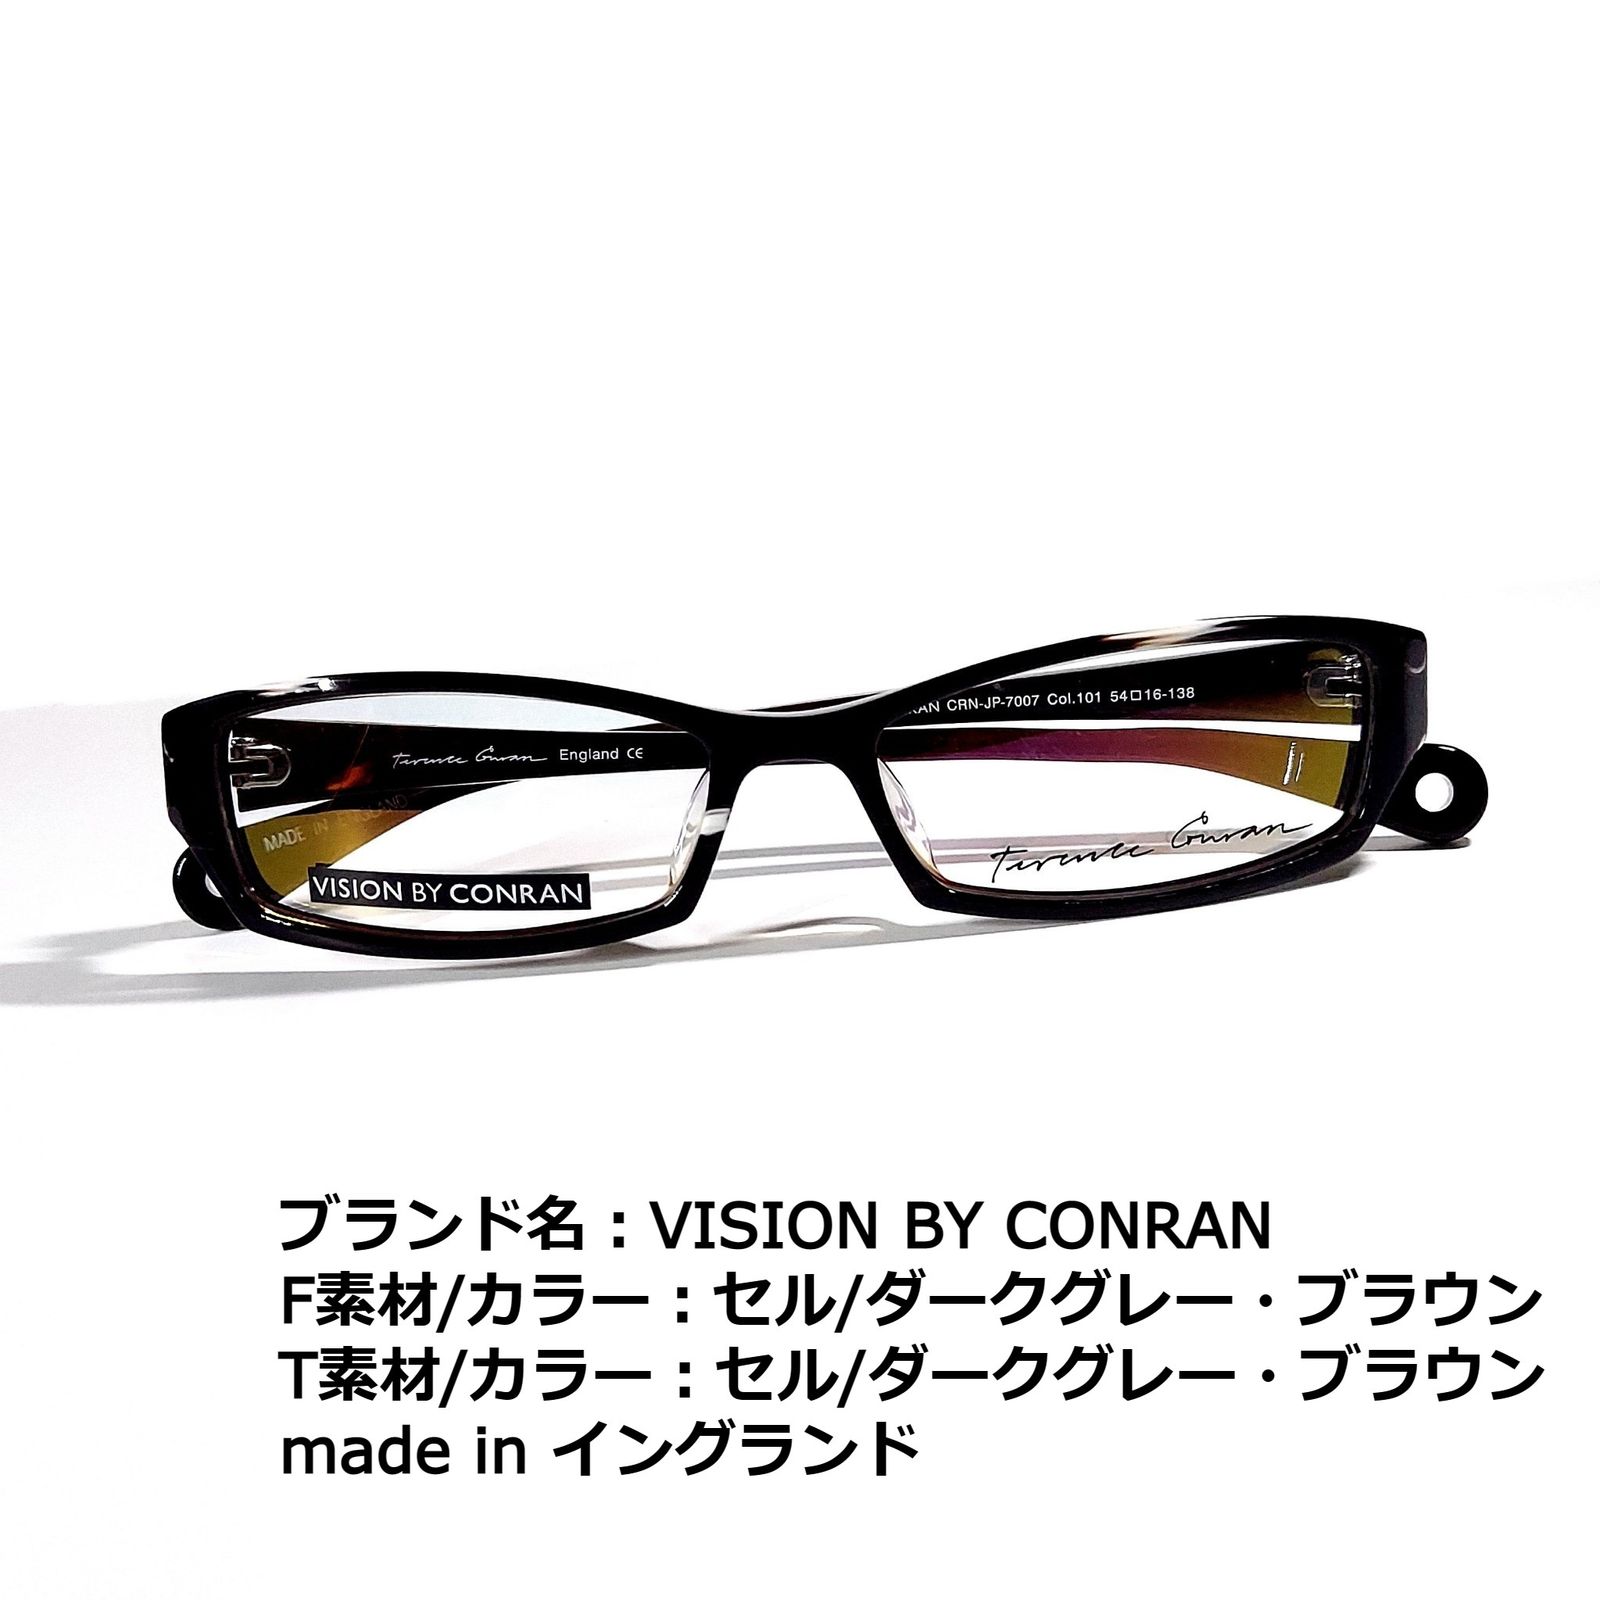 セルダークグレーブラウン素材No.1727メガネ　VISION BY CONRAN【度数入り込み価格】